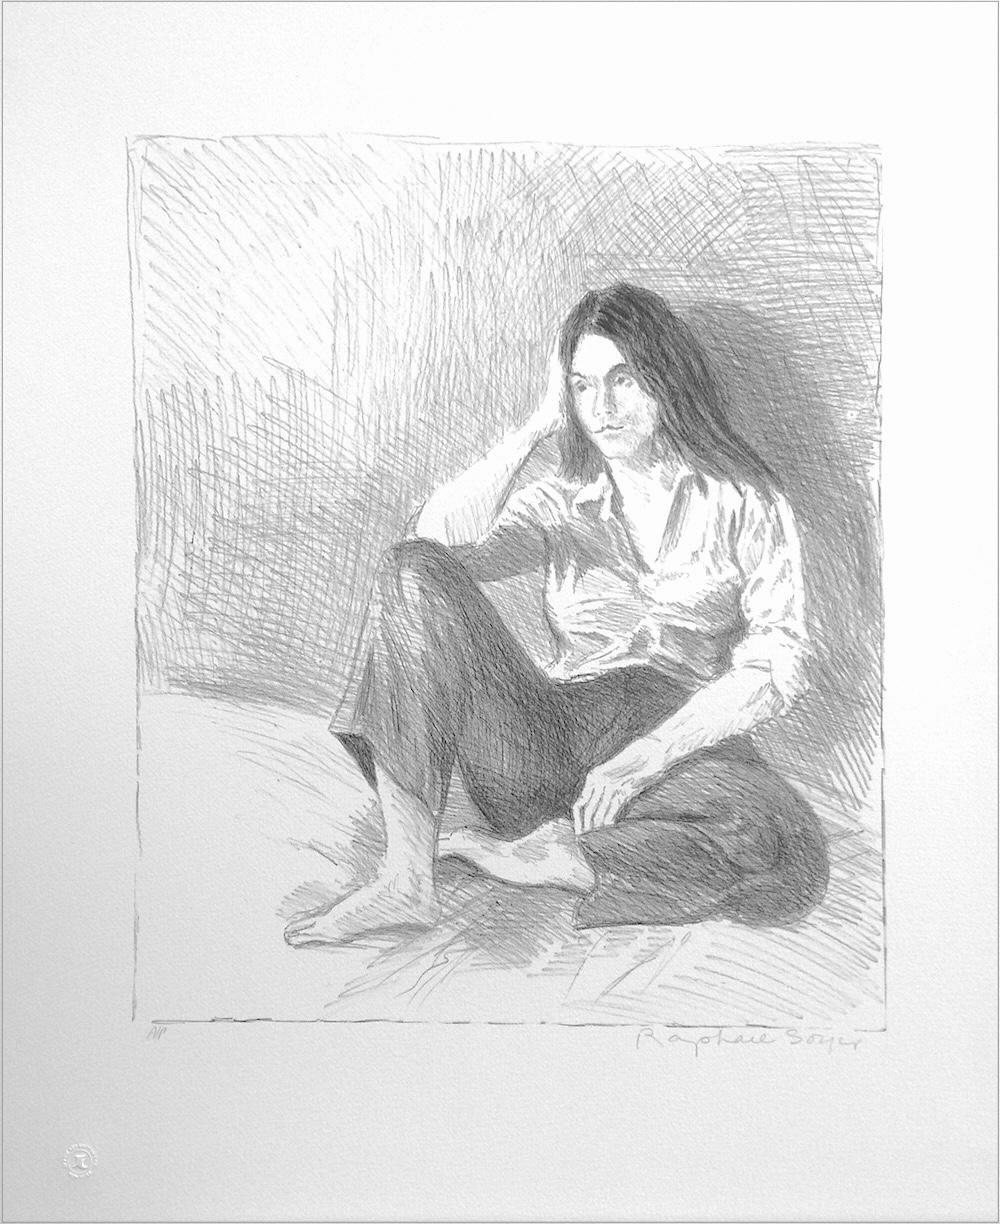 Lithographie signée Femme assise en jeans bleu, portrait de femme, cheveux longs, pieds nus - Print de Raphael Soyer